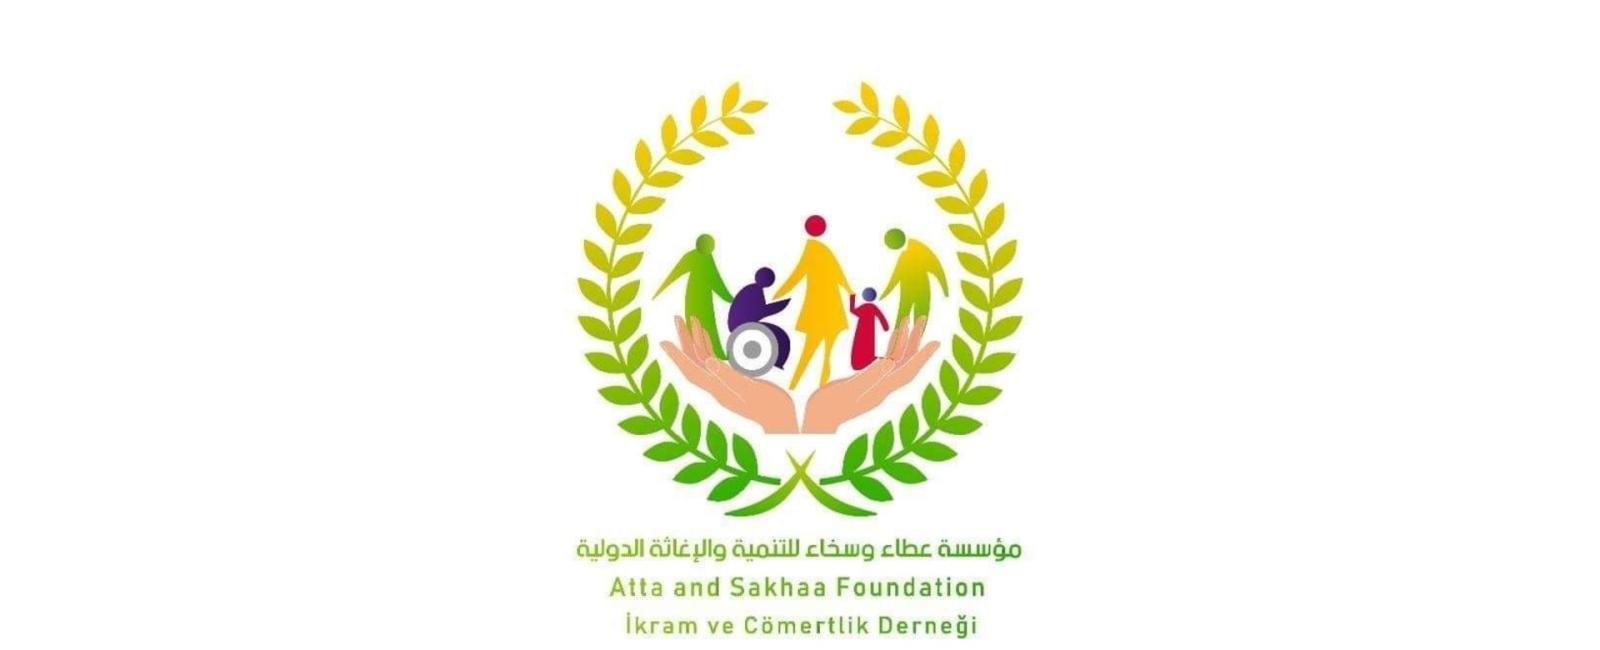 مؤسسة عطاء وسخاء للتنمية والإغاثة الدولية - مرسين